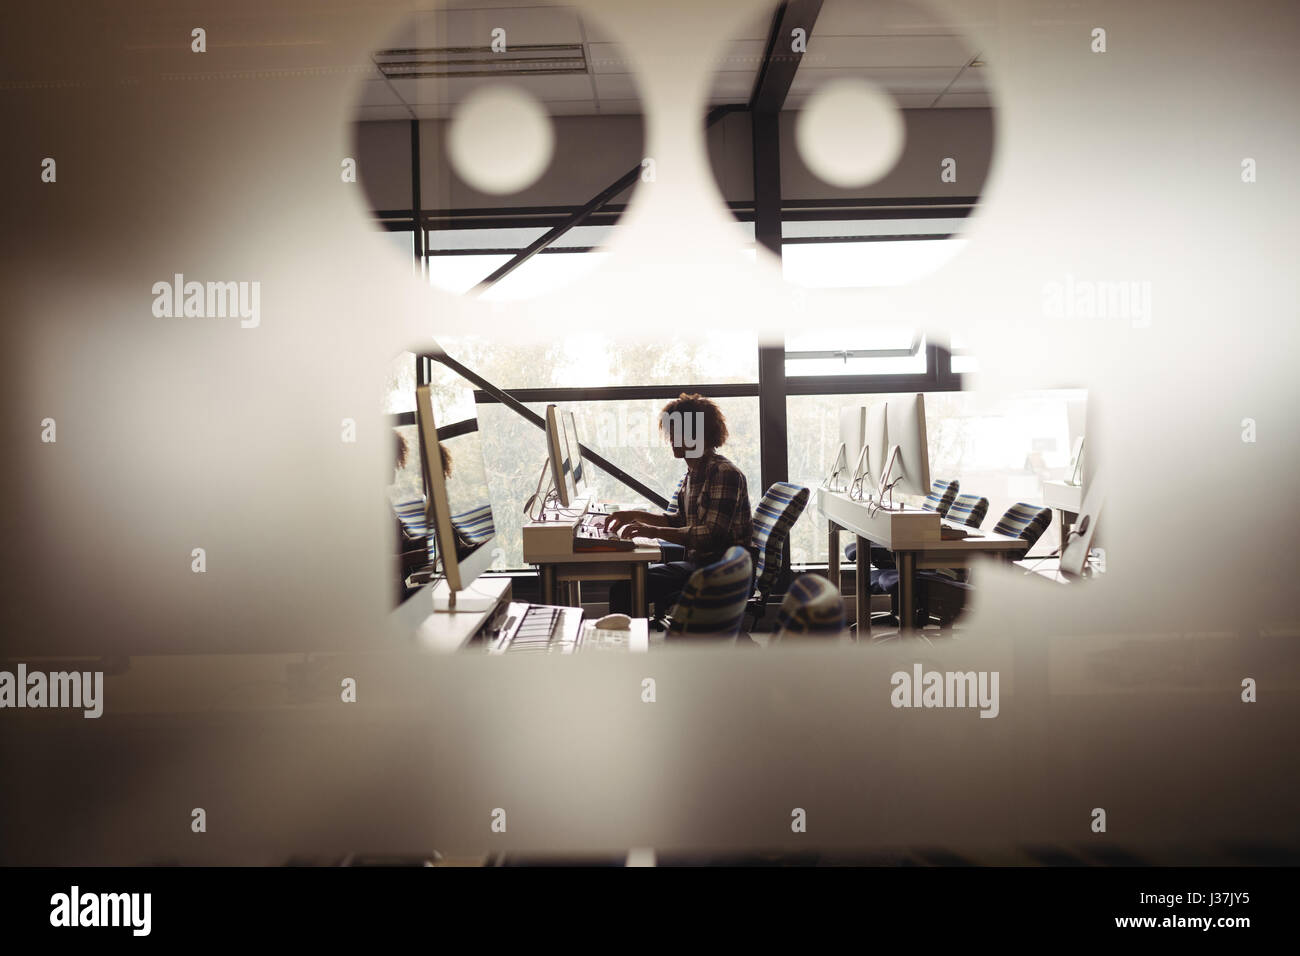 Audio mâle ingénieur travaillant sur écran montage numérique en studio d'enregistrement Banque D'Images